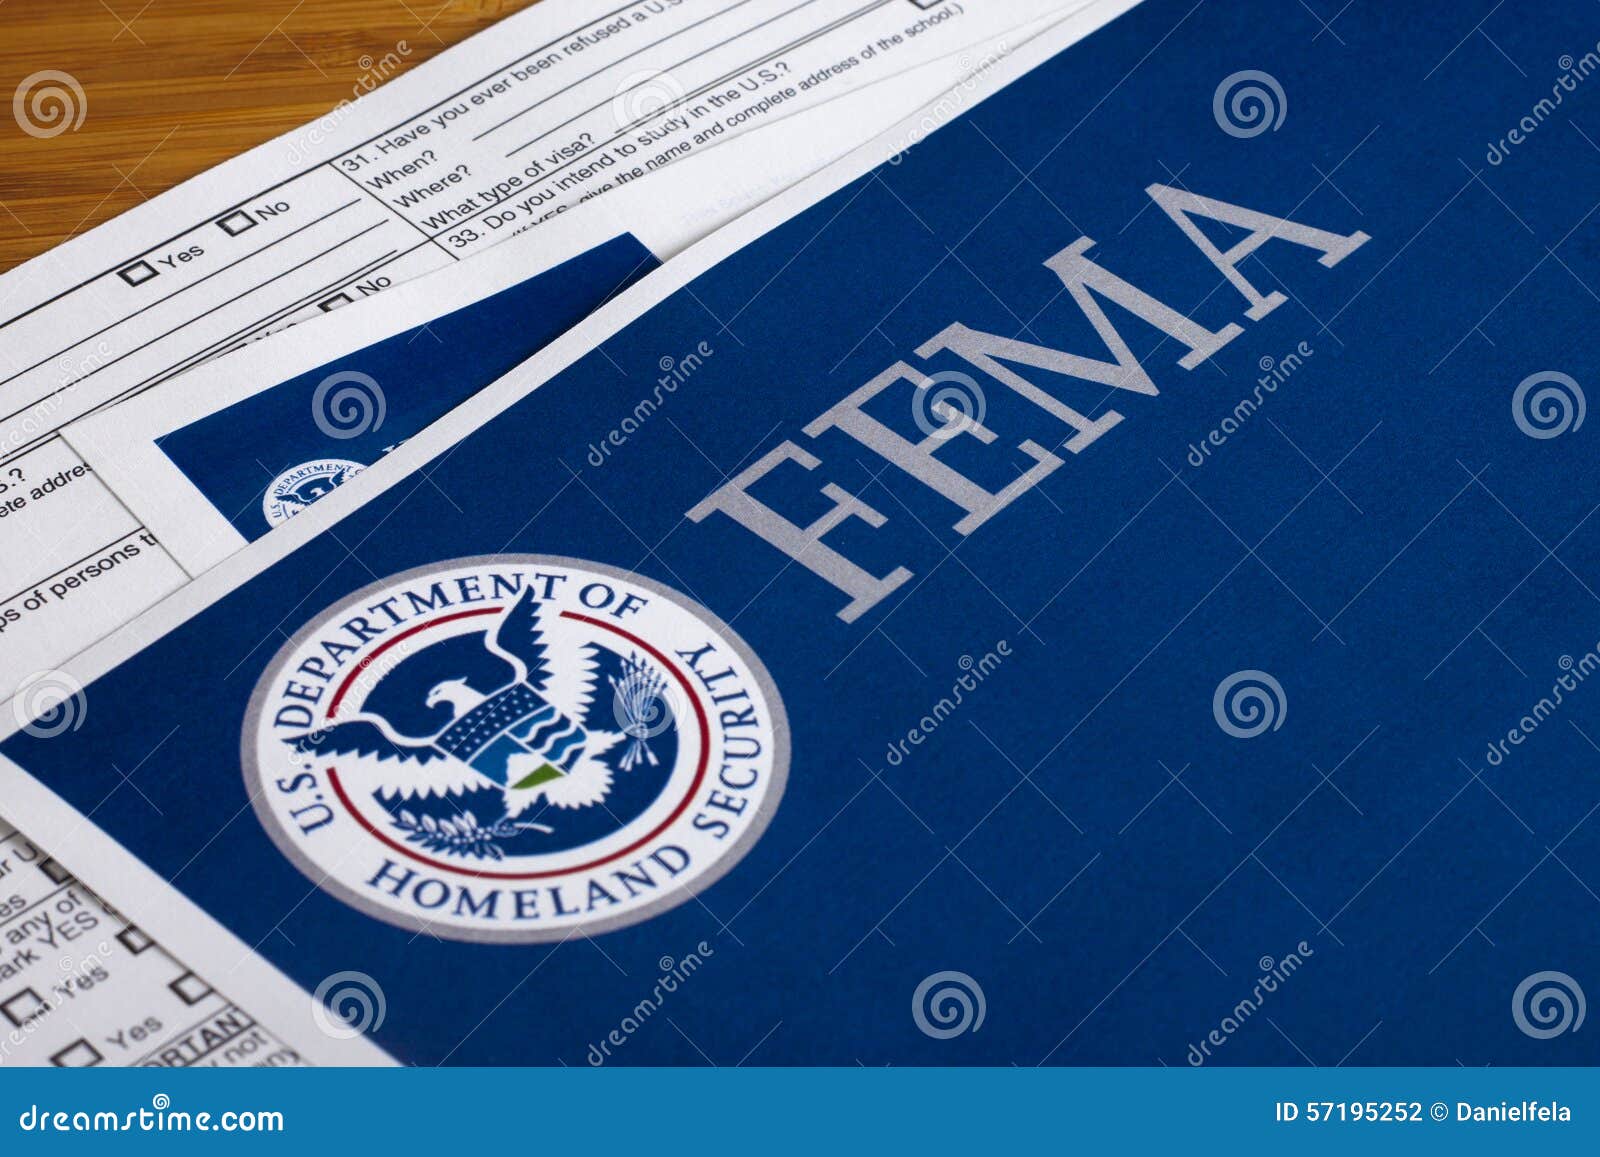 fema us homeland security form